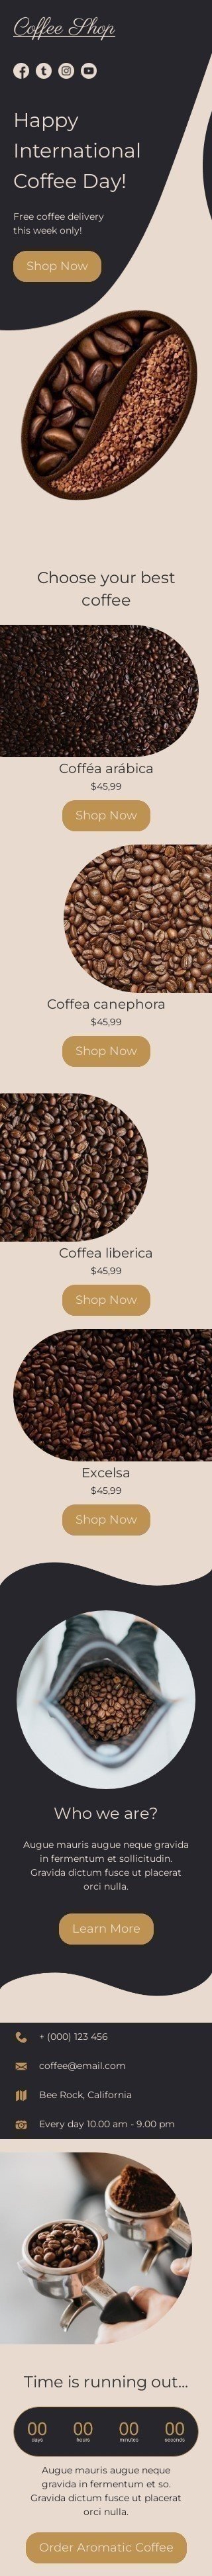 Internationaler Tag des Kaffees E-Mail-Vorlage «Wählen Sie Ihren besten Kaffee» für Getränke-Branche Ansicht auf Mobilgeräten